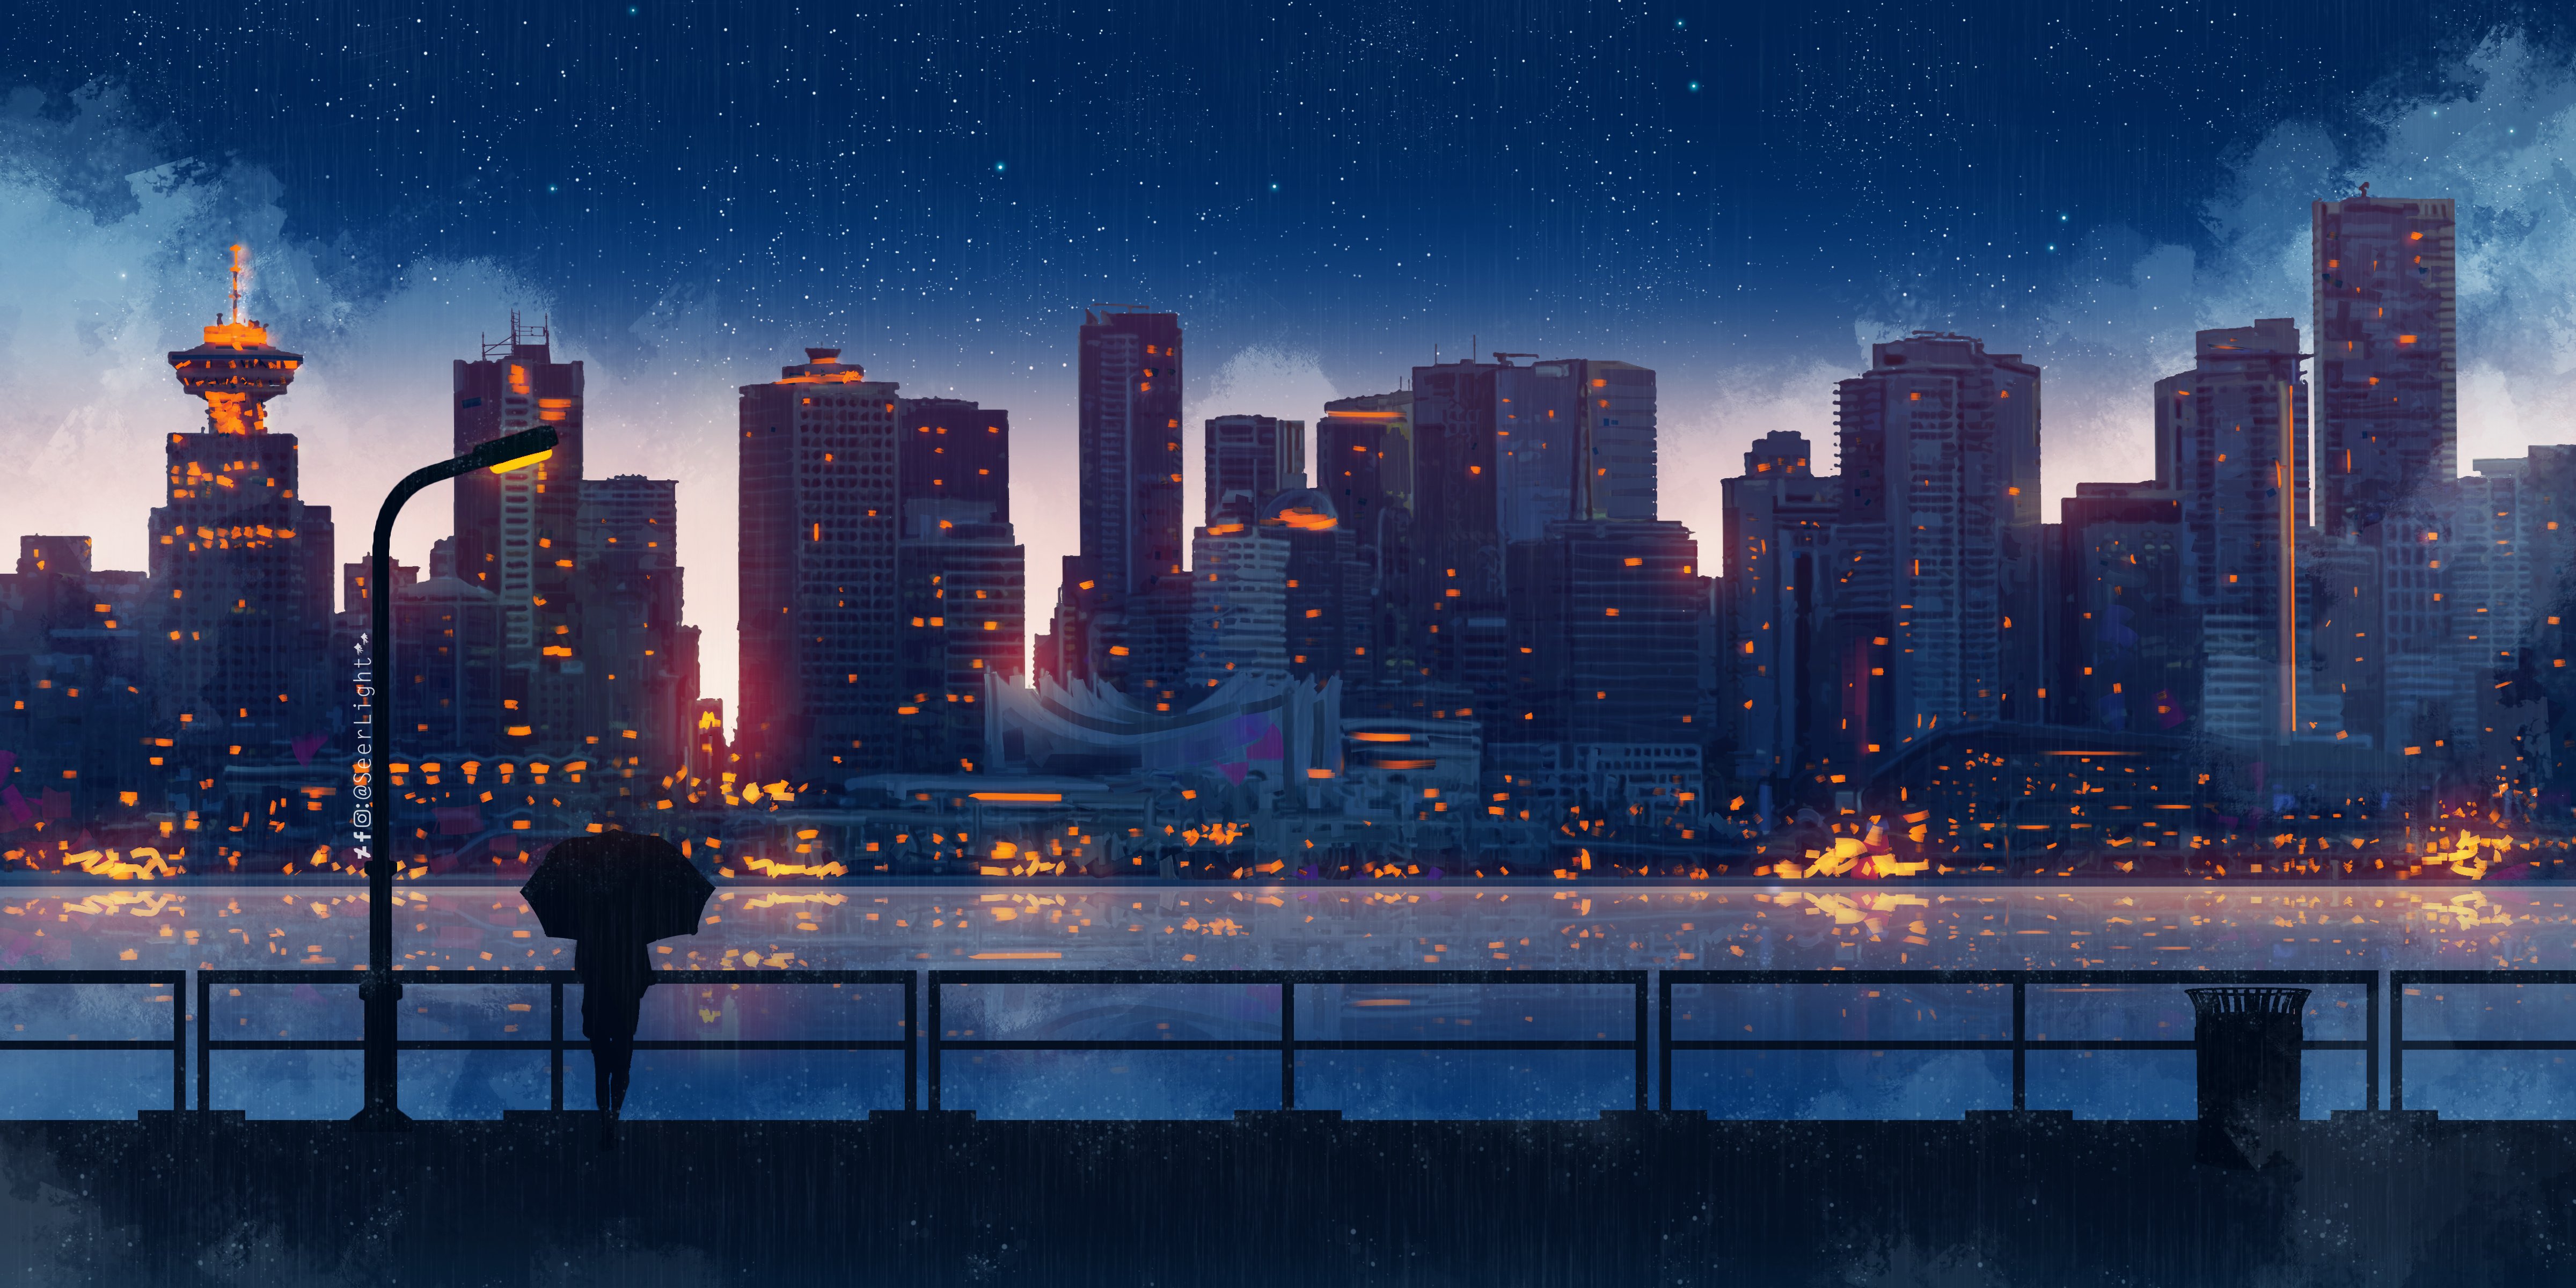 Ciudad por la noche estilo anime Fondo de pantalla ID:5480